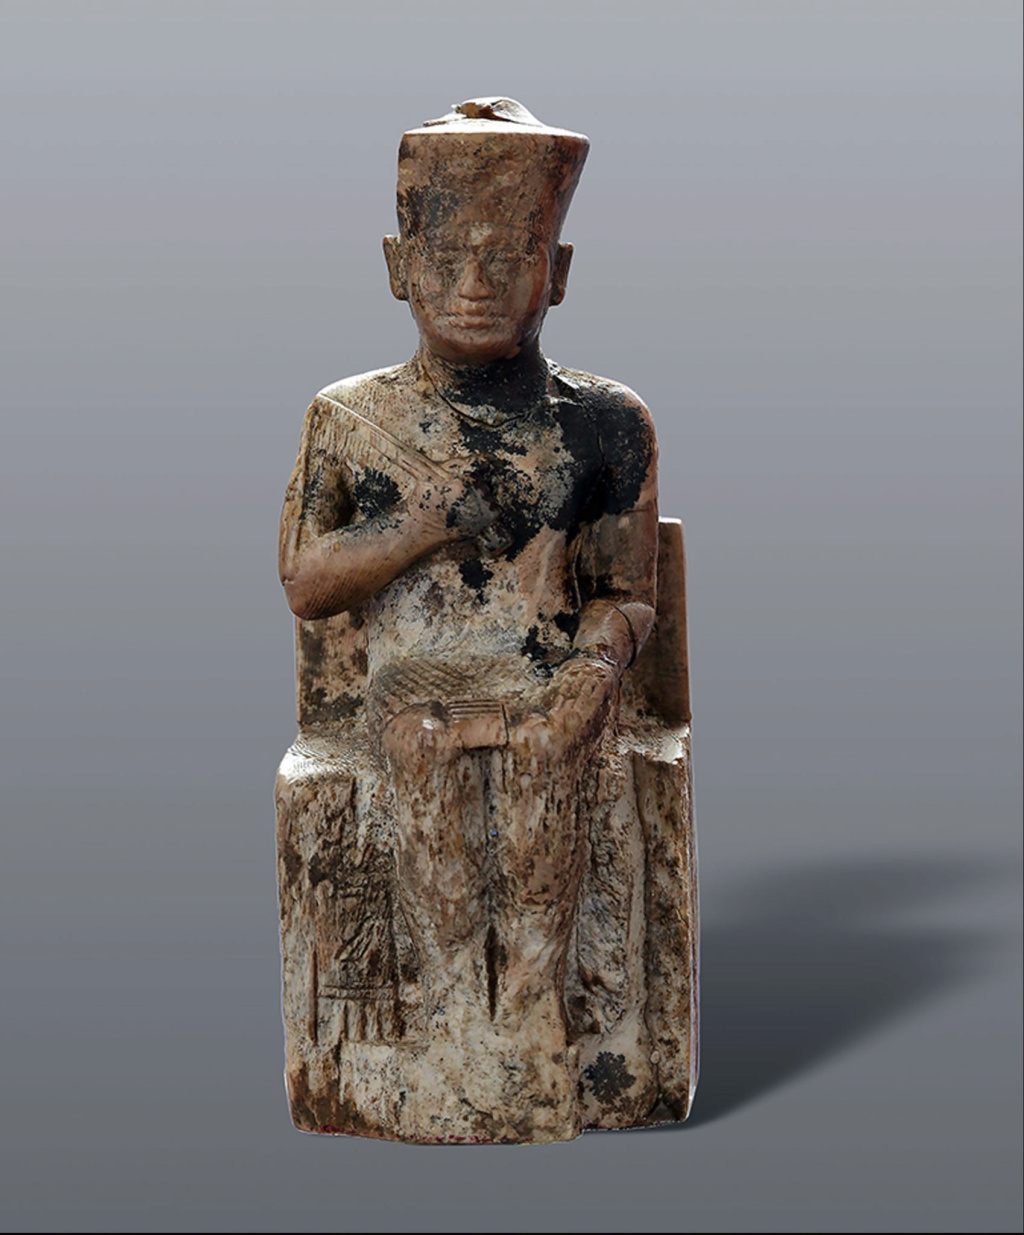 تمثال صغير لصاحب أخر عجائب الدنيا السبع (الهرم الاكبر) 1-2884